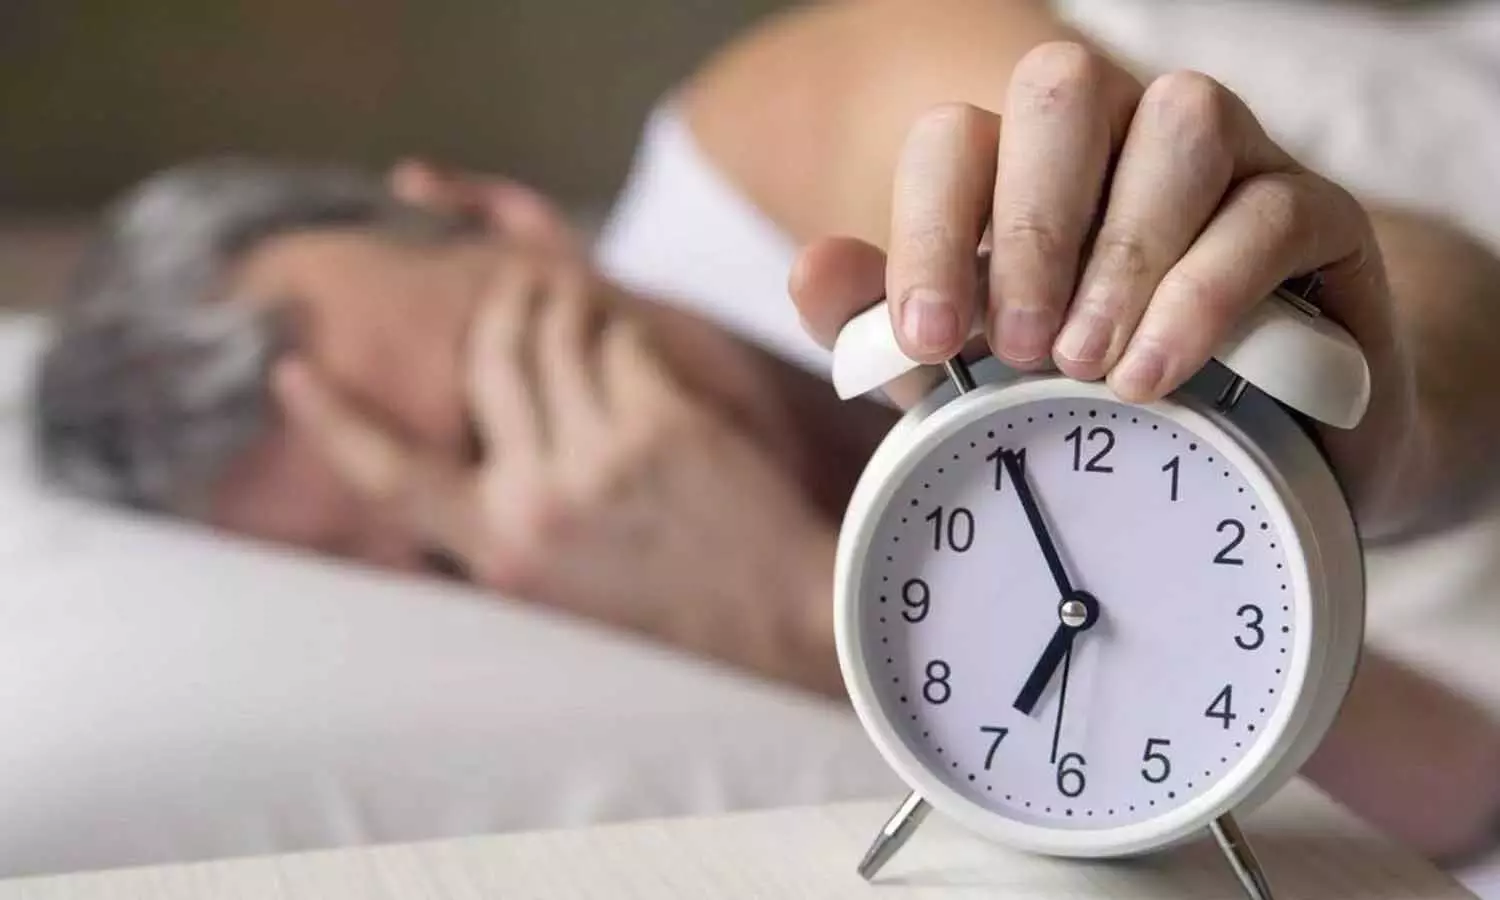 Obstructive Sleep Apnea: ऑब्सट्रक्टिव स्लीप एपनिया से बचने के लिए इन आदतों को जीवन में करें शामिल